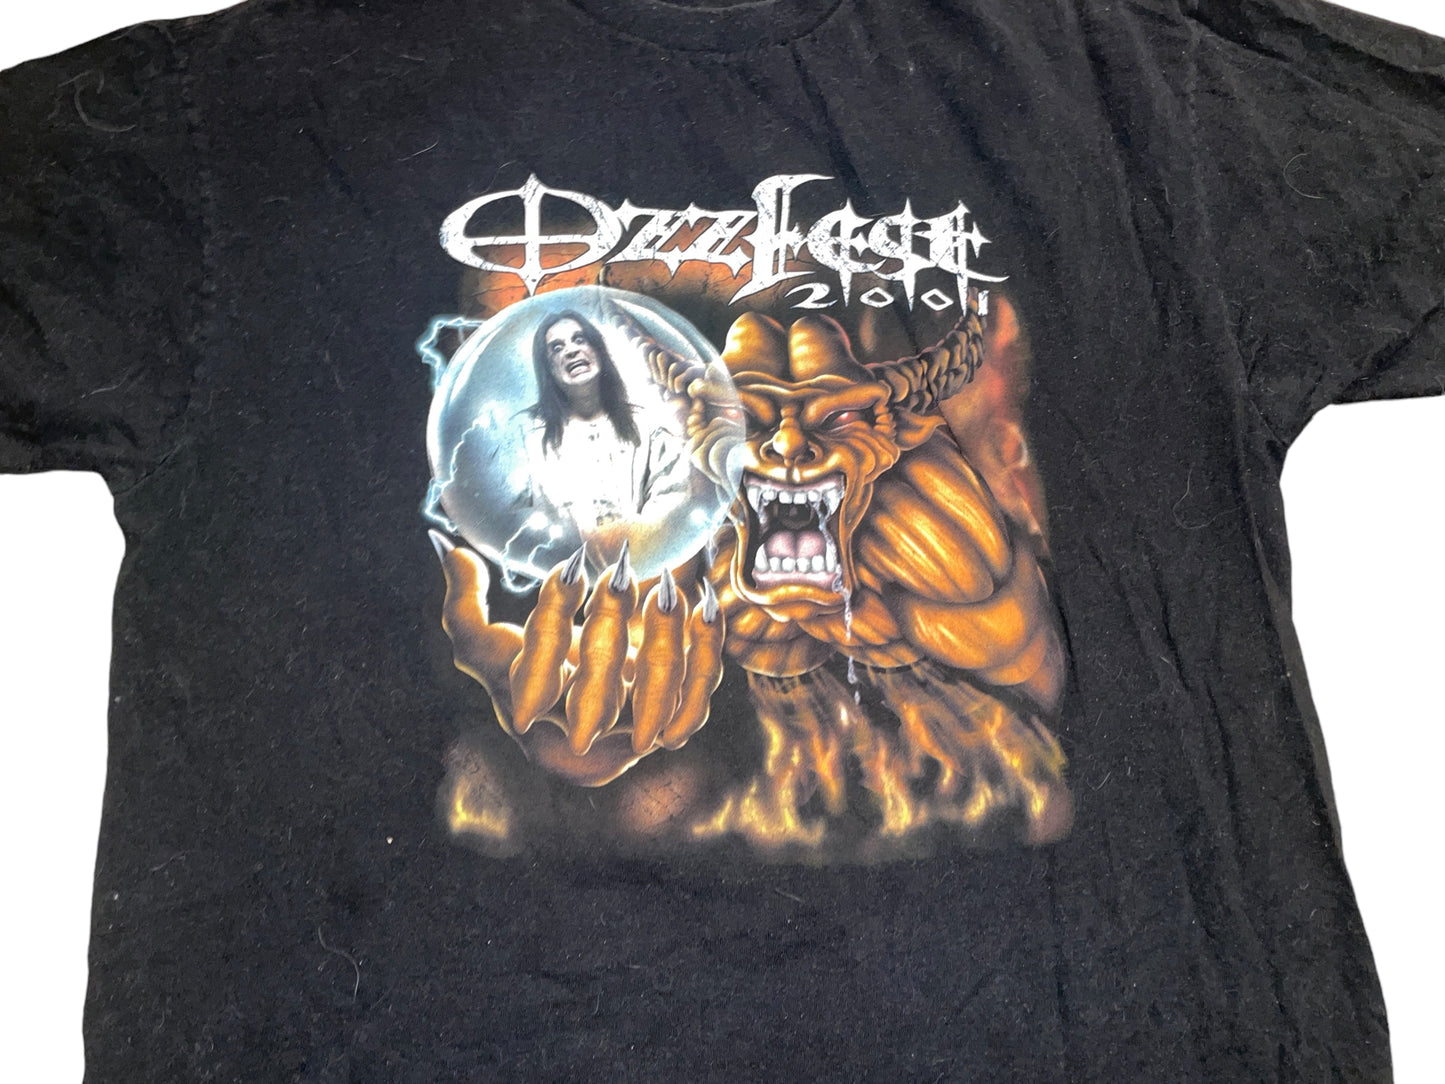 Vintage 2001 Ozzfest T-Shirt